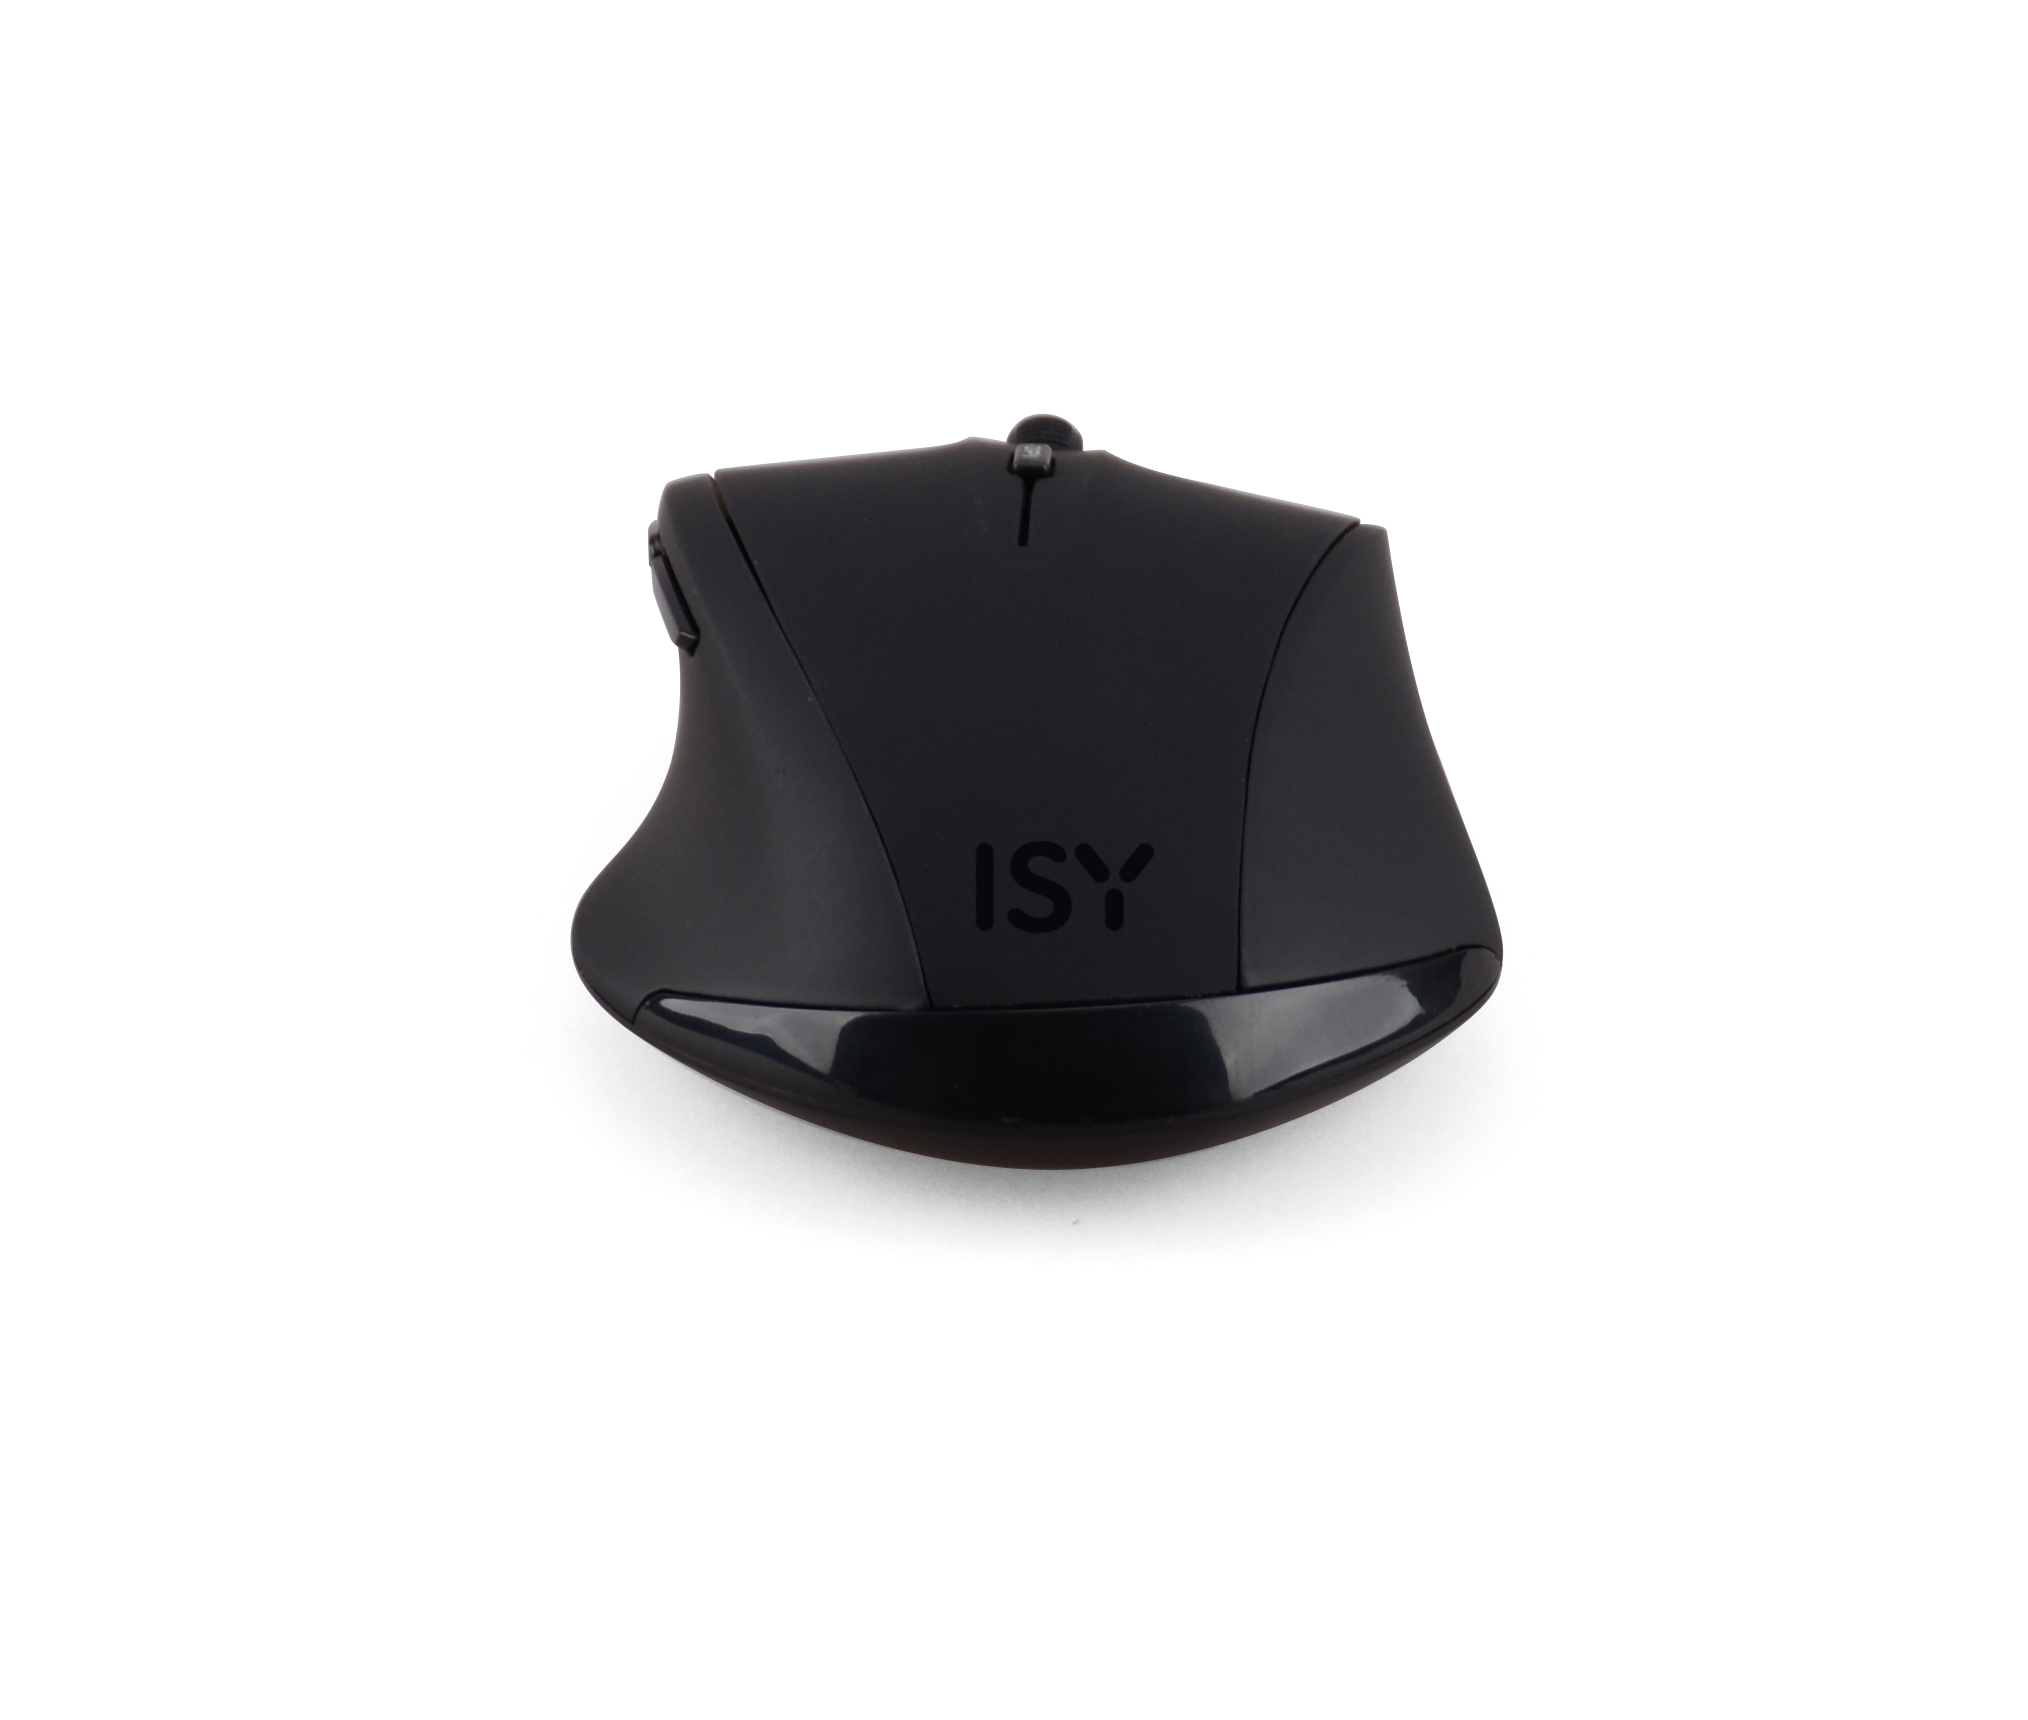 ISY IWM-3100 Schwarz Maus,